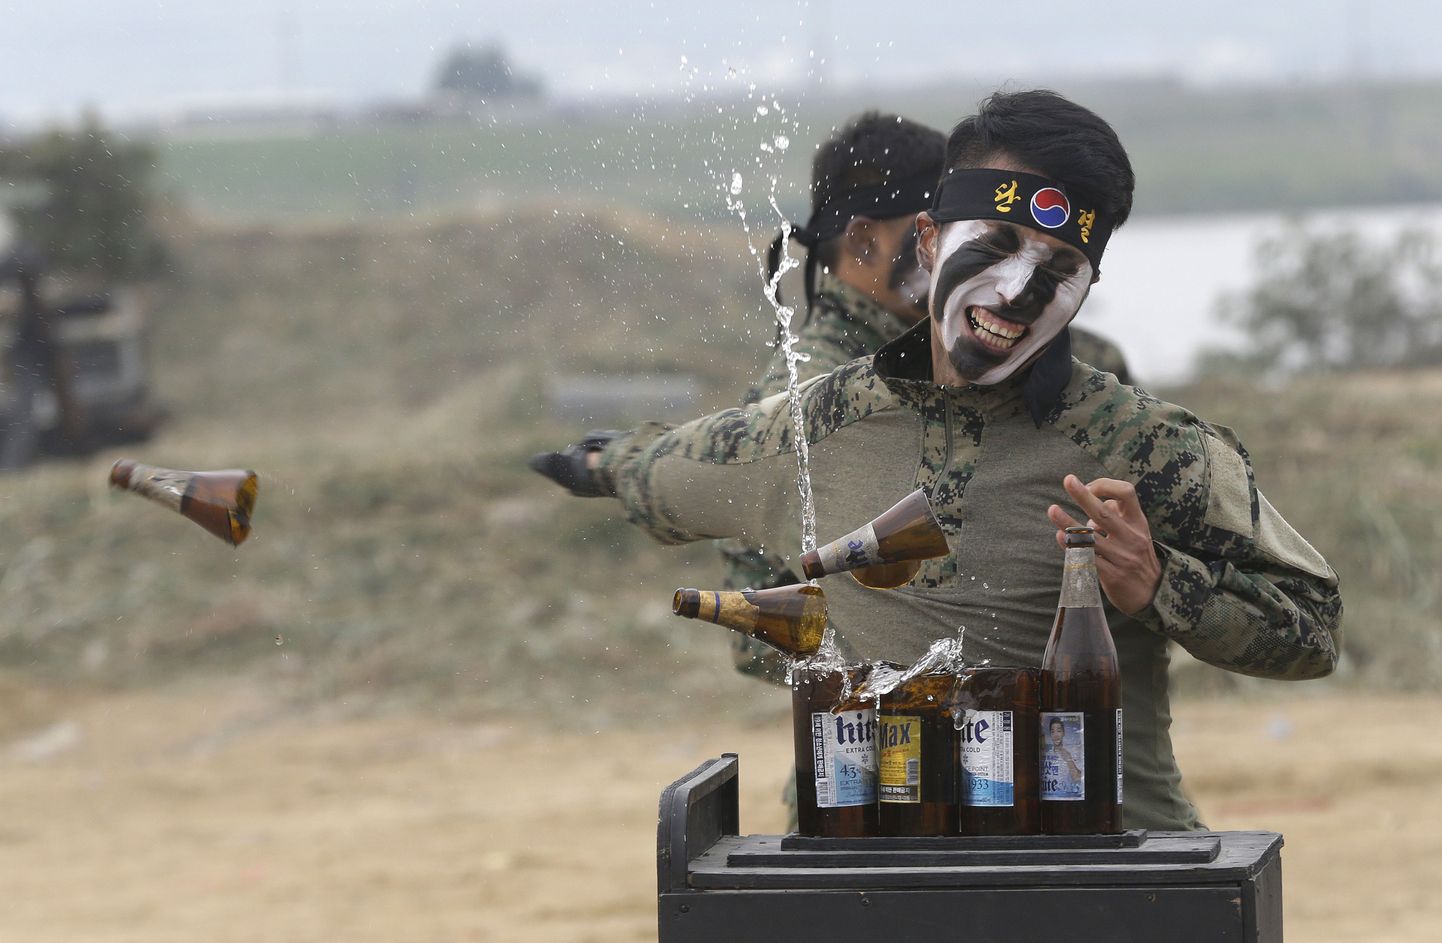 Южнокорейский спецназовец разбивает бутылки рукой. Иллюстративное фото.